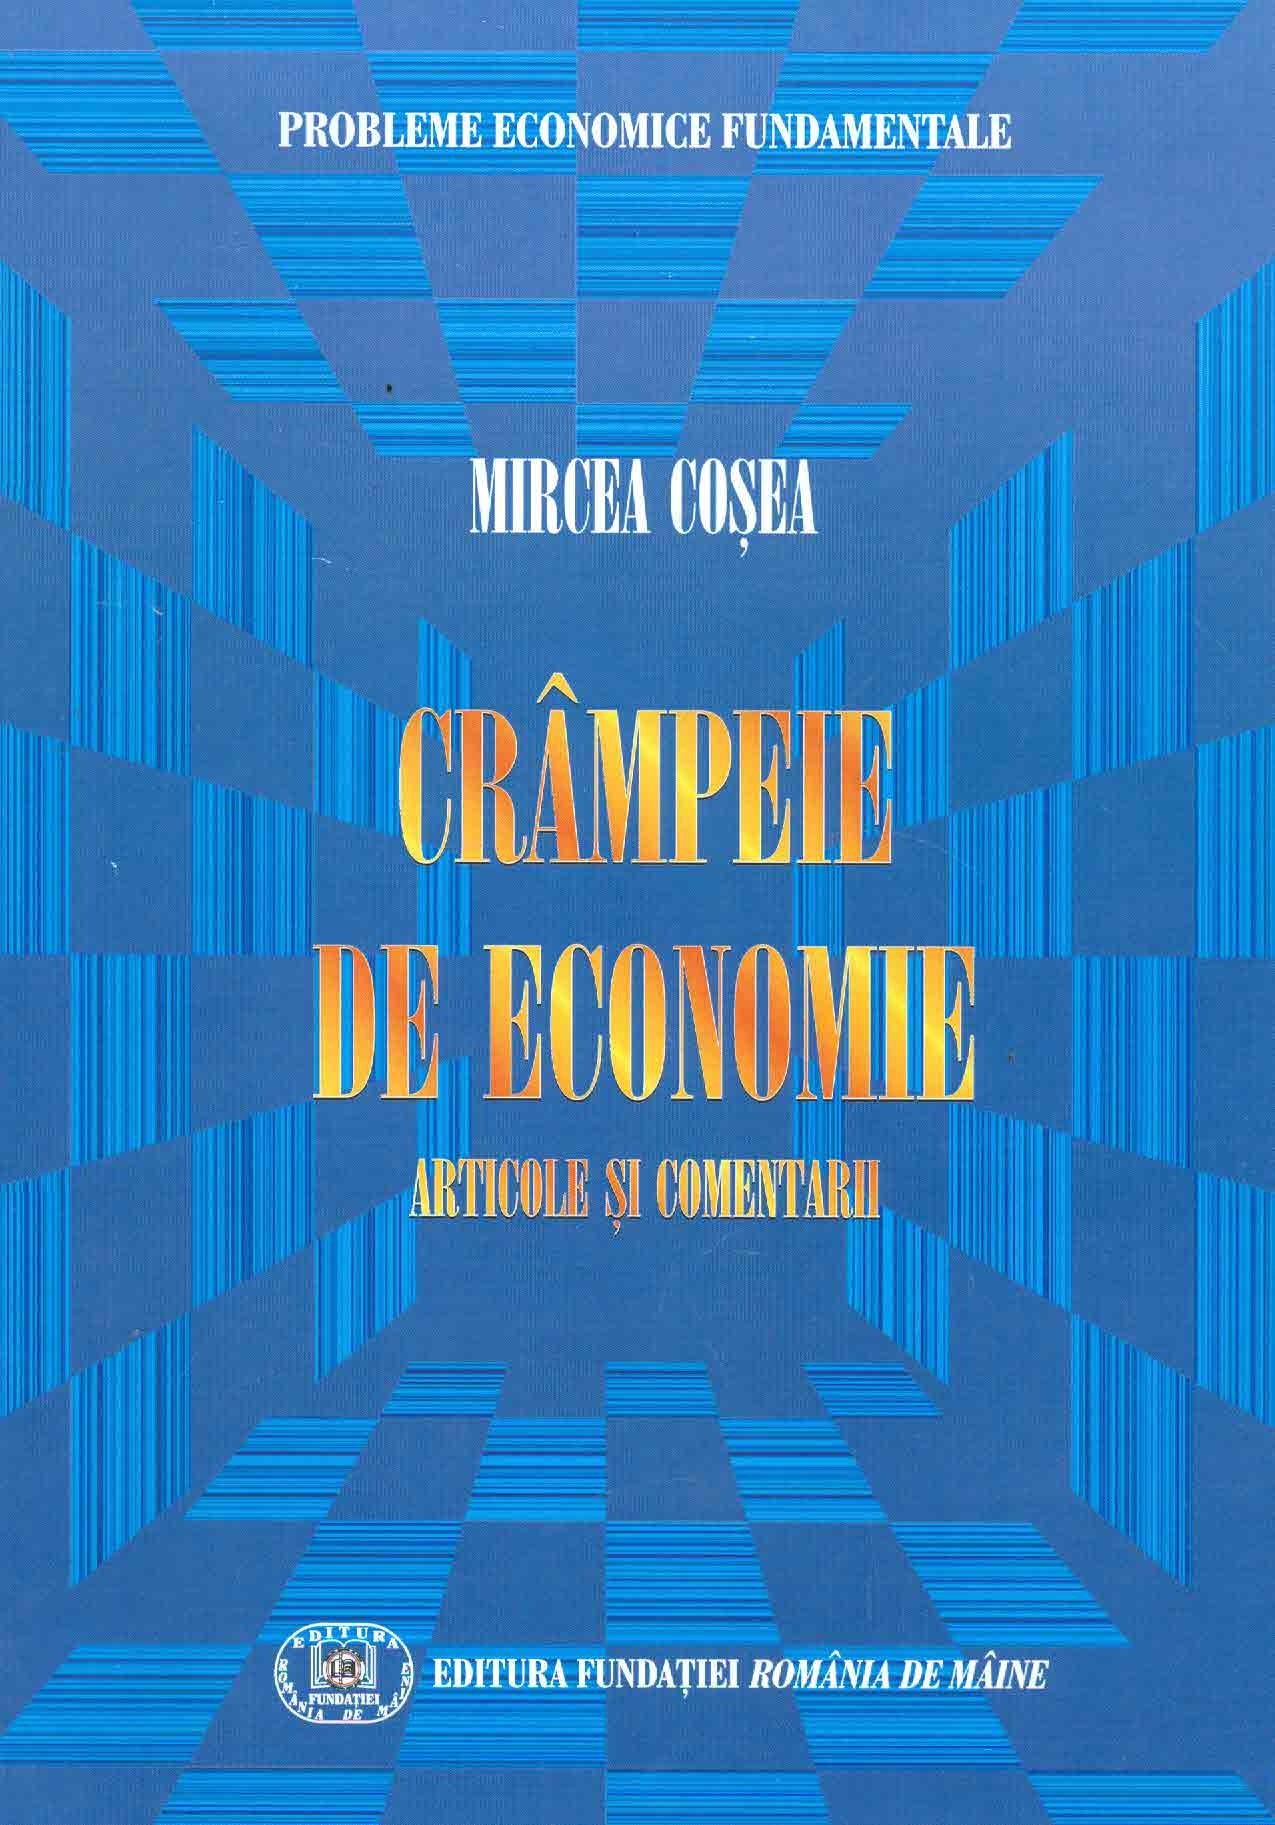 Crampeie de economie | Mircea Cosea carturesti.ro imagine 2022